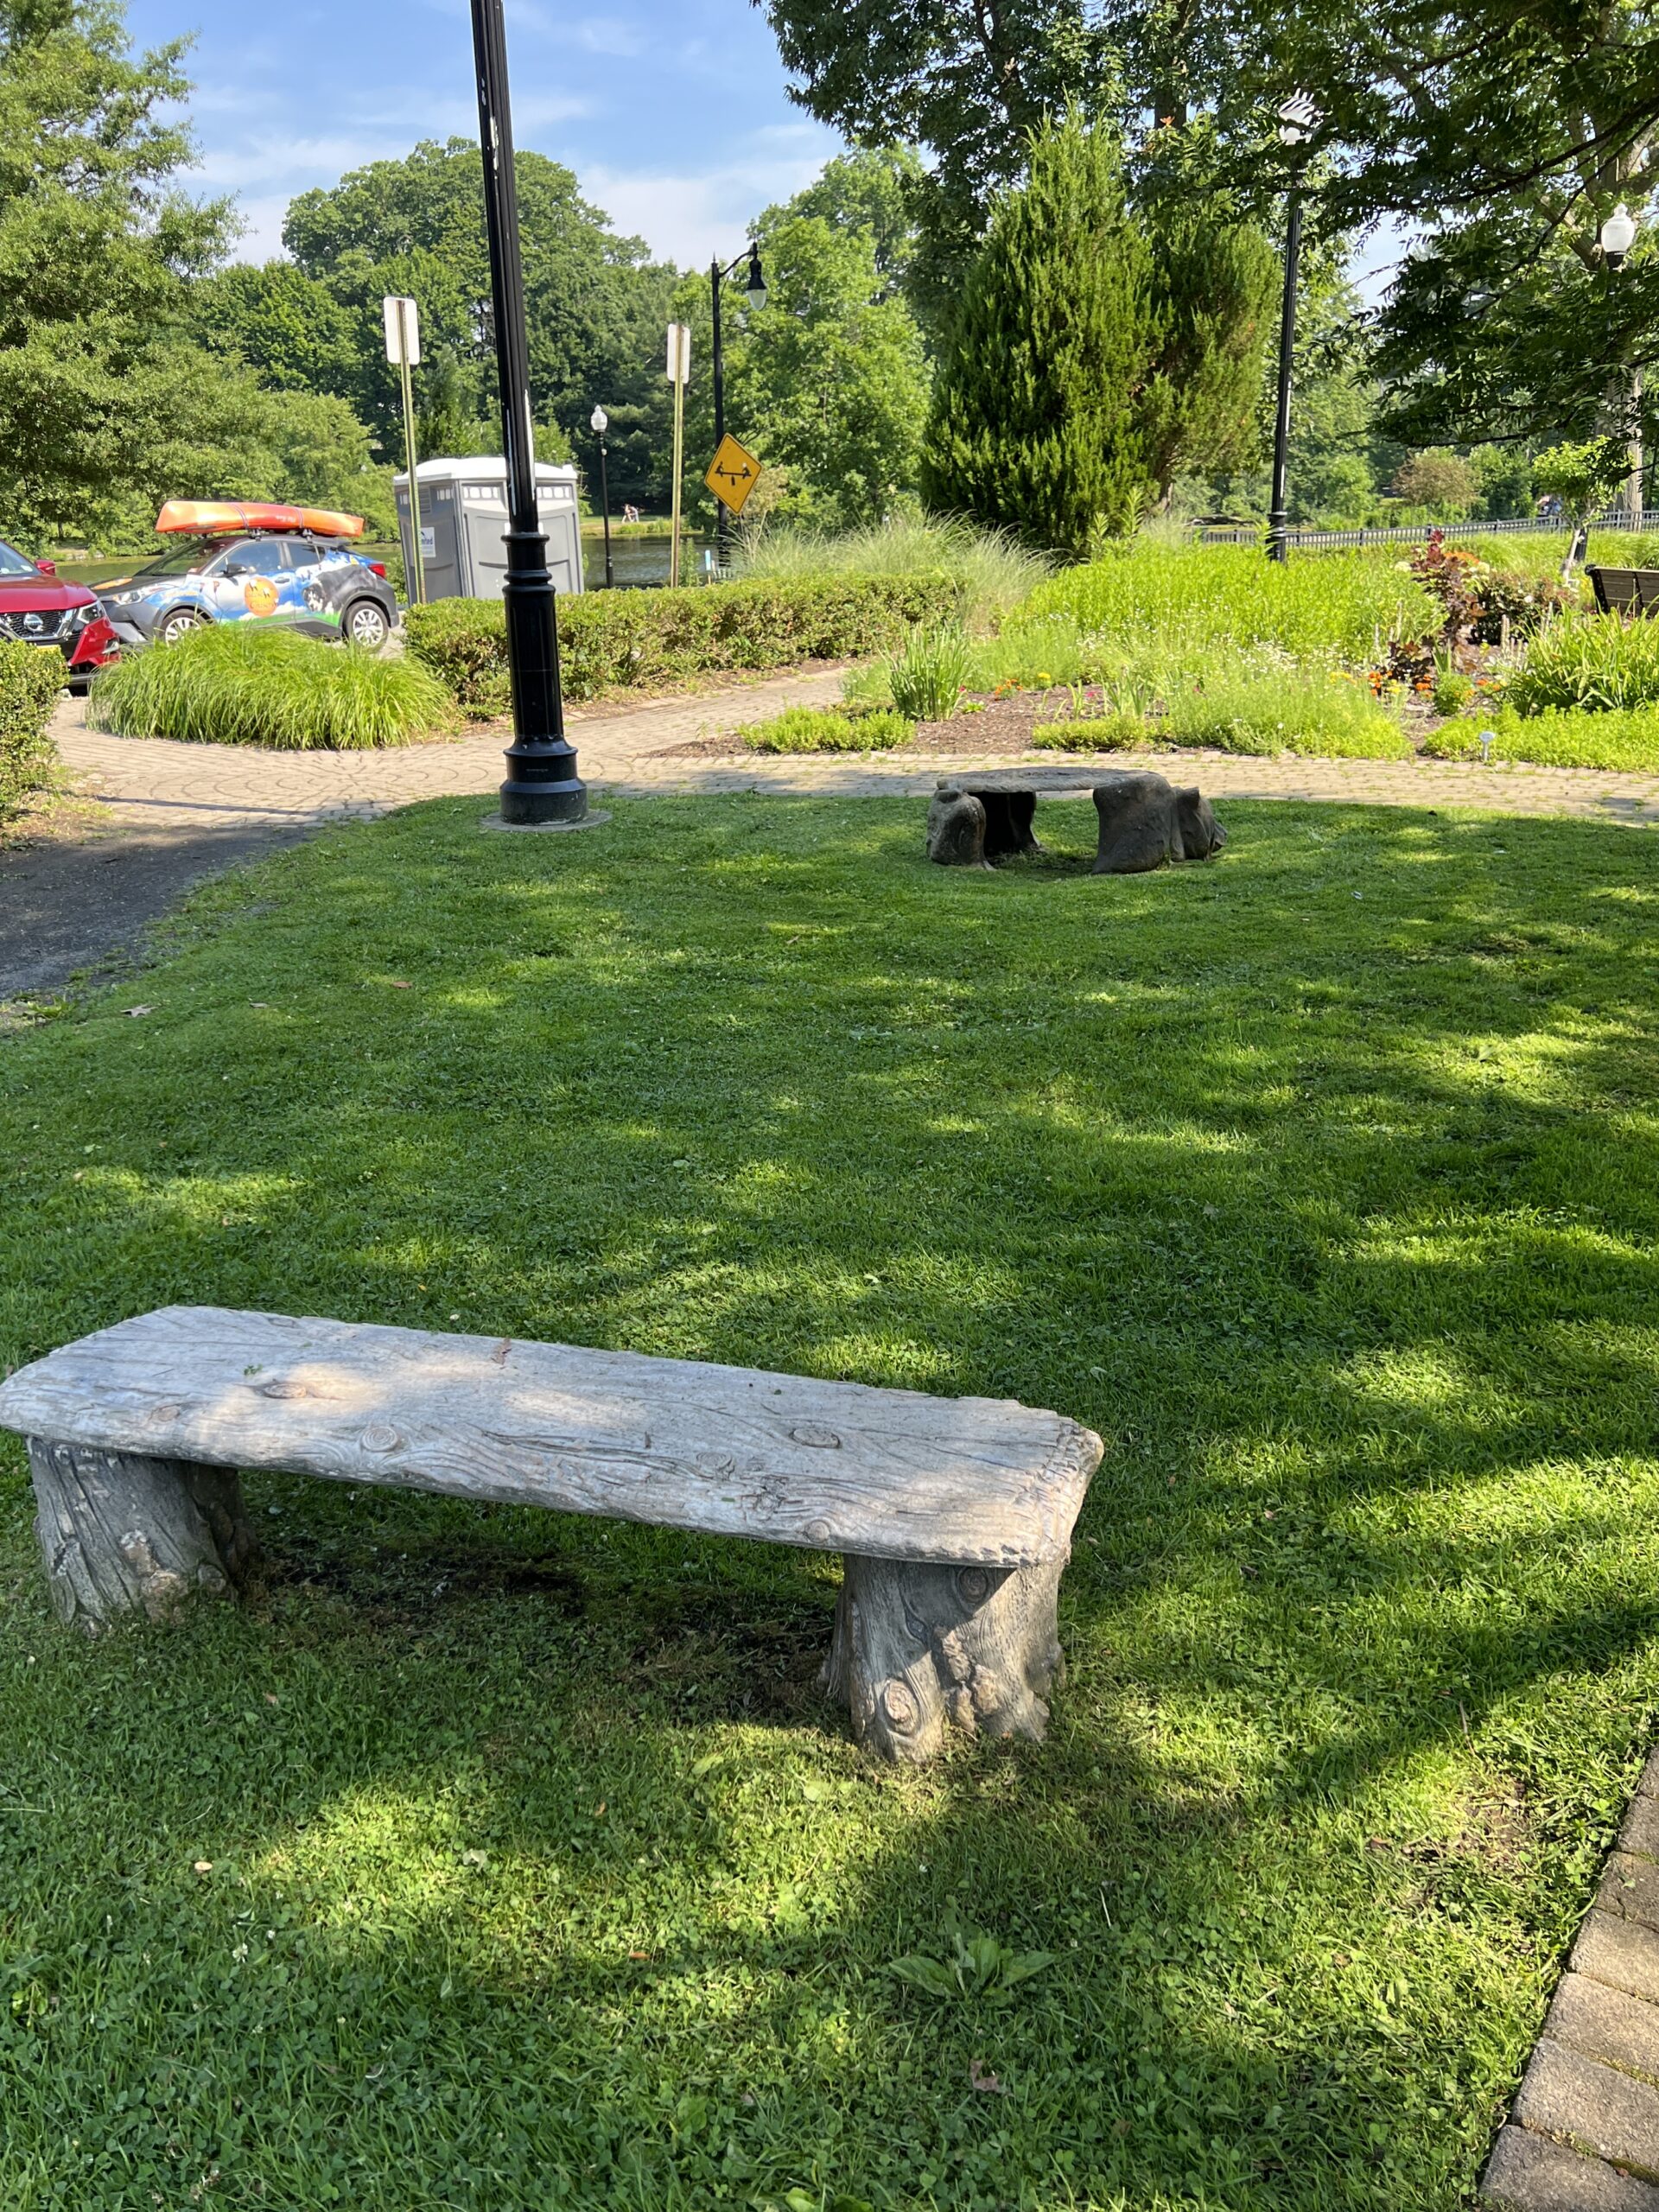 Verona Park in Verona NJ - Extra - Children's Garden bench